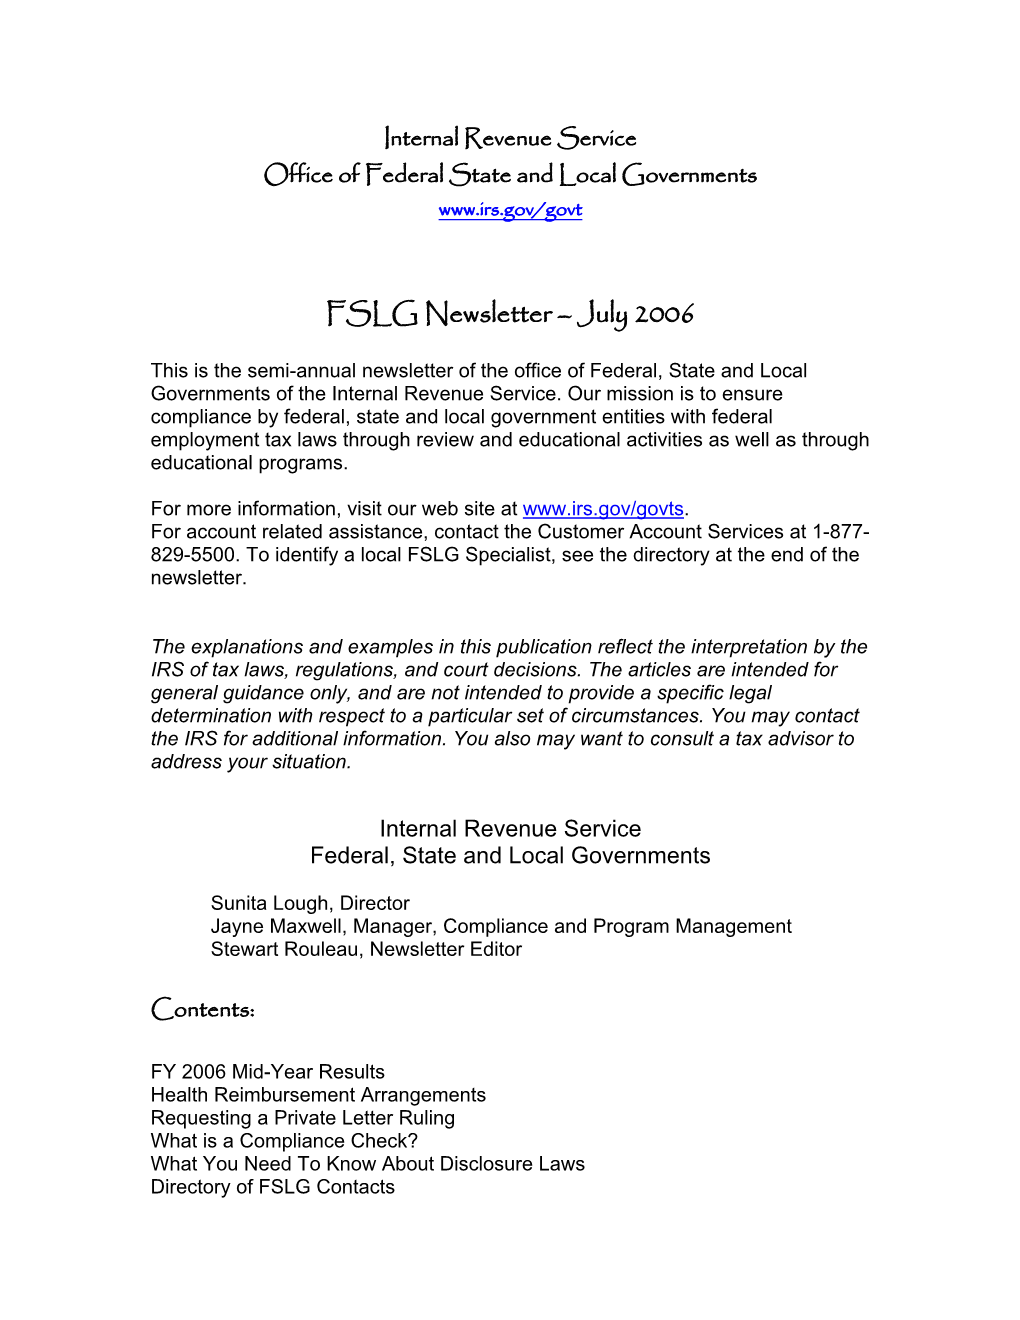 FSLG Newsletter – July 2006